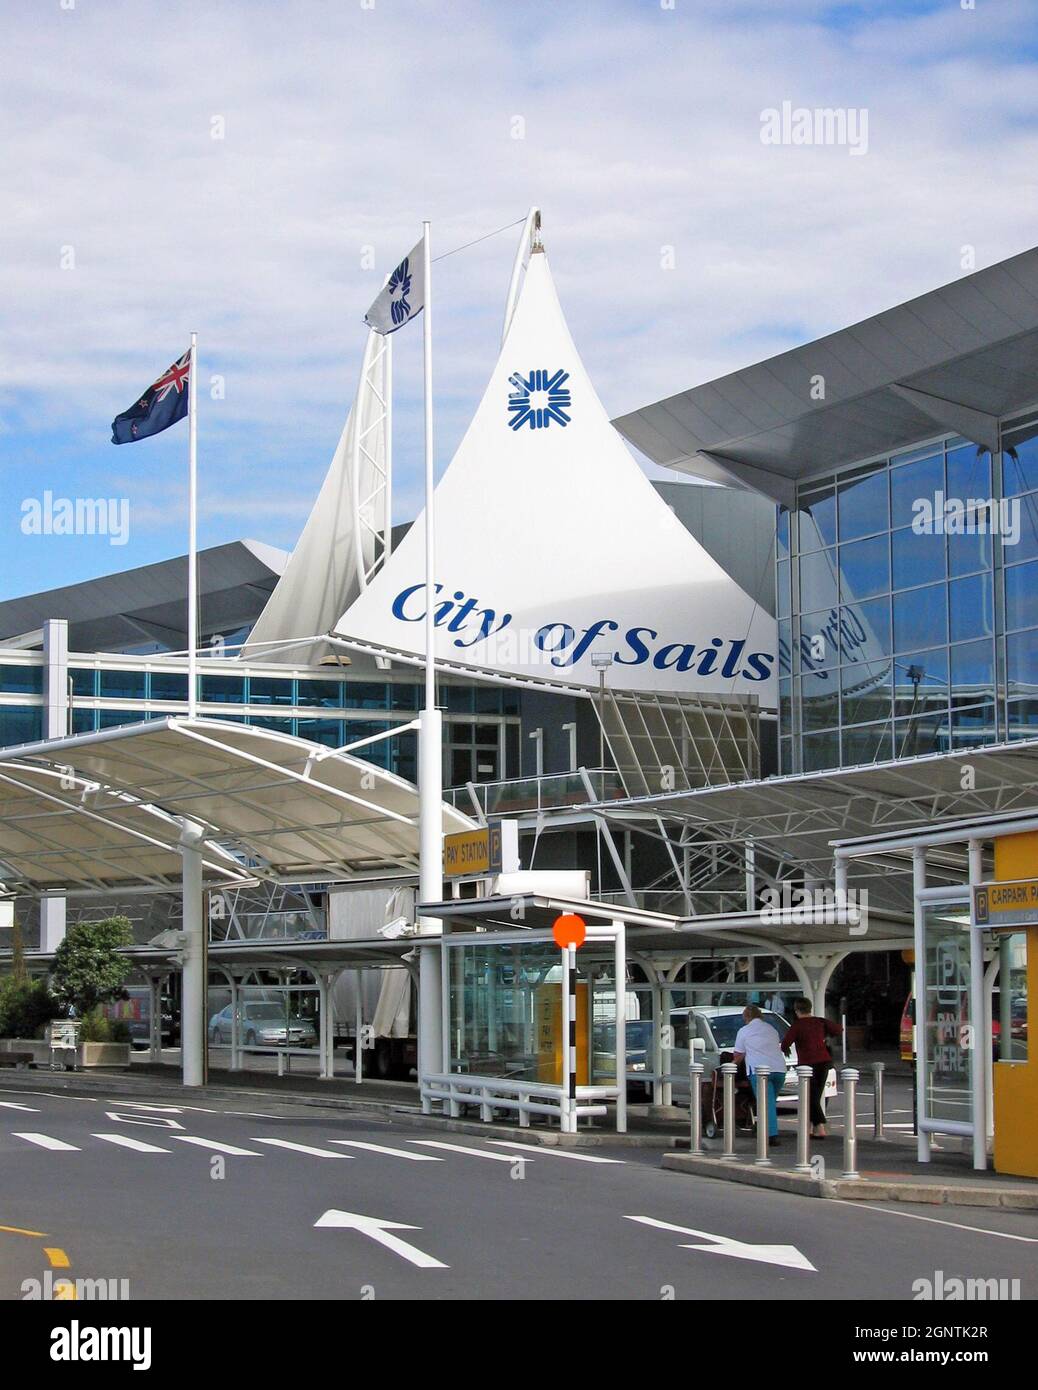 Il livello delle partenze all'Aeroporto Internazionale di Auckland, Nuova Zelanda, mostra il moniker City of Sails fuori dal suo ingresso principale. La strada a livello delle partenze fuori dall'ingresso dell'aeroporto è utilizzata dai viaggiatori che spingono i bagagli durante una giornata di sole nel novembre 2004. La bandiera neozelandese ondeggia sopra l'ingresso del terminal. Foto Stock